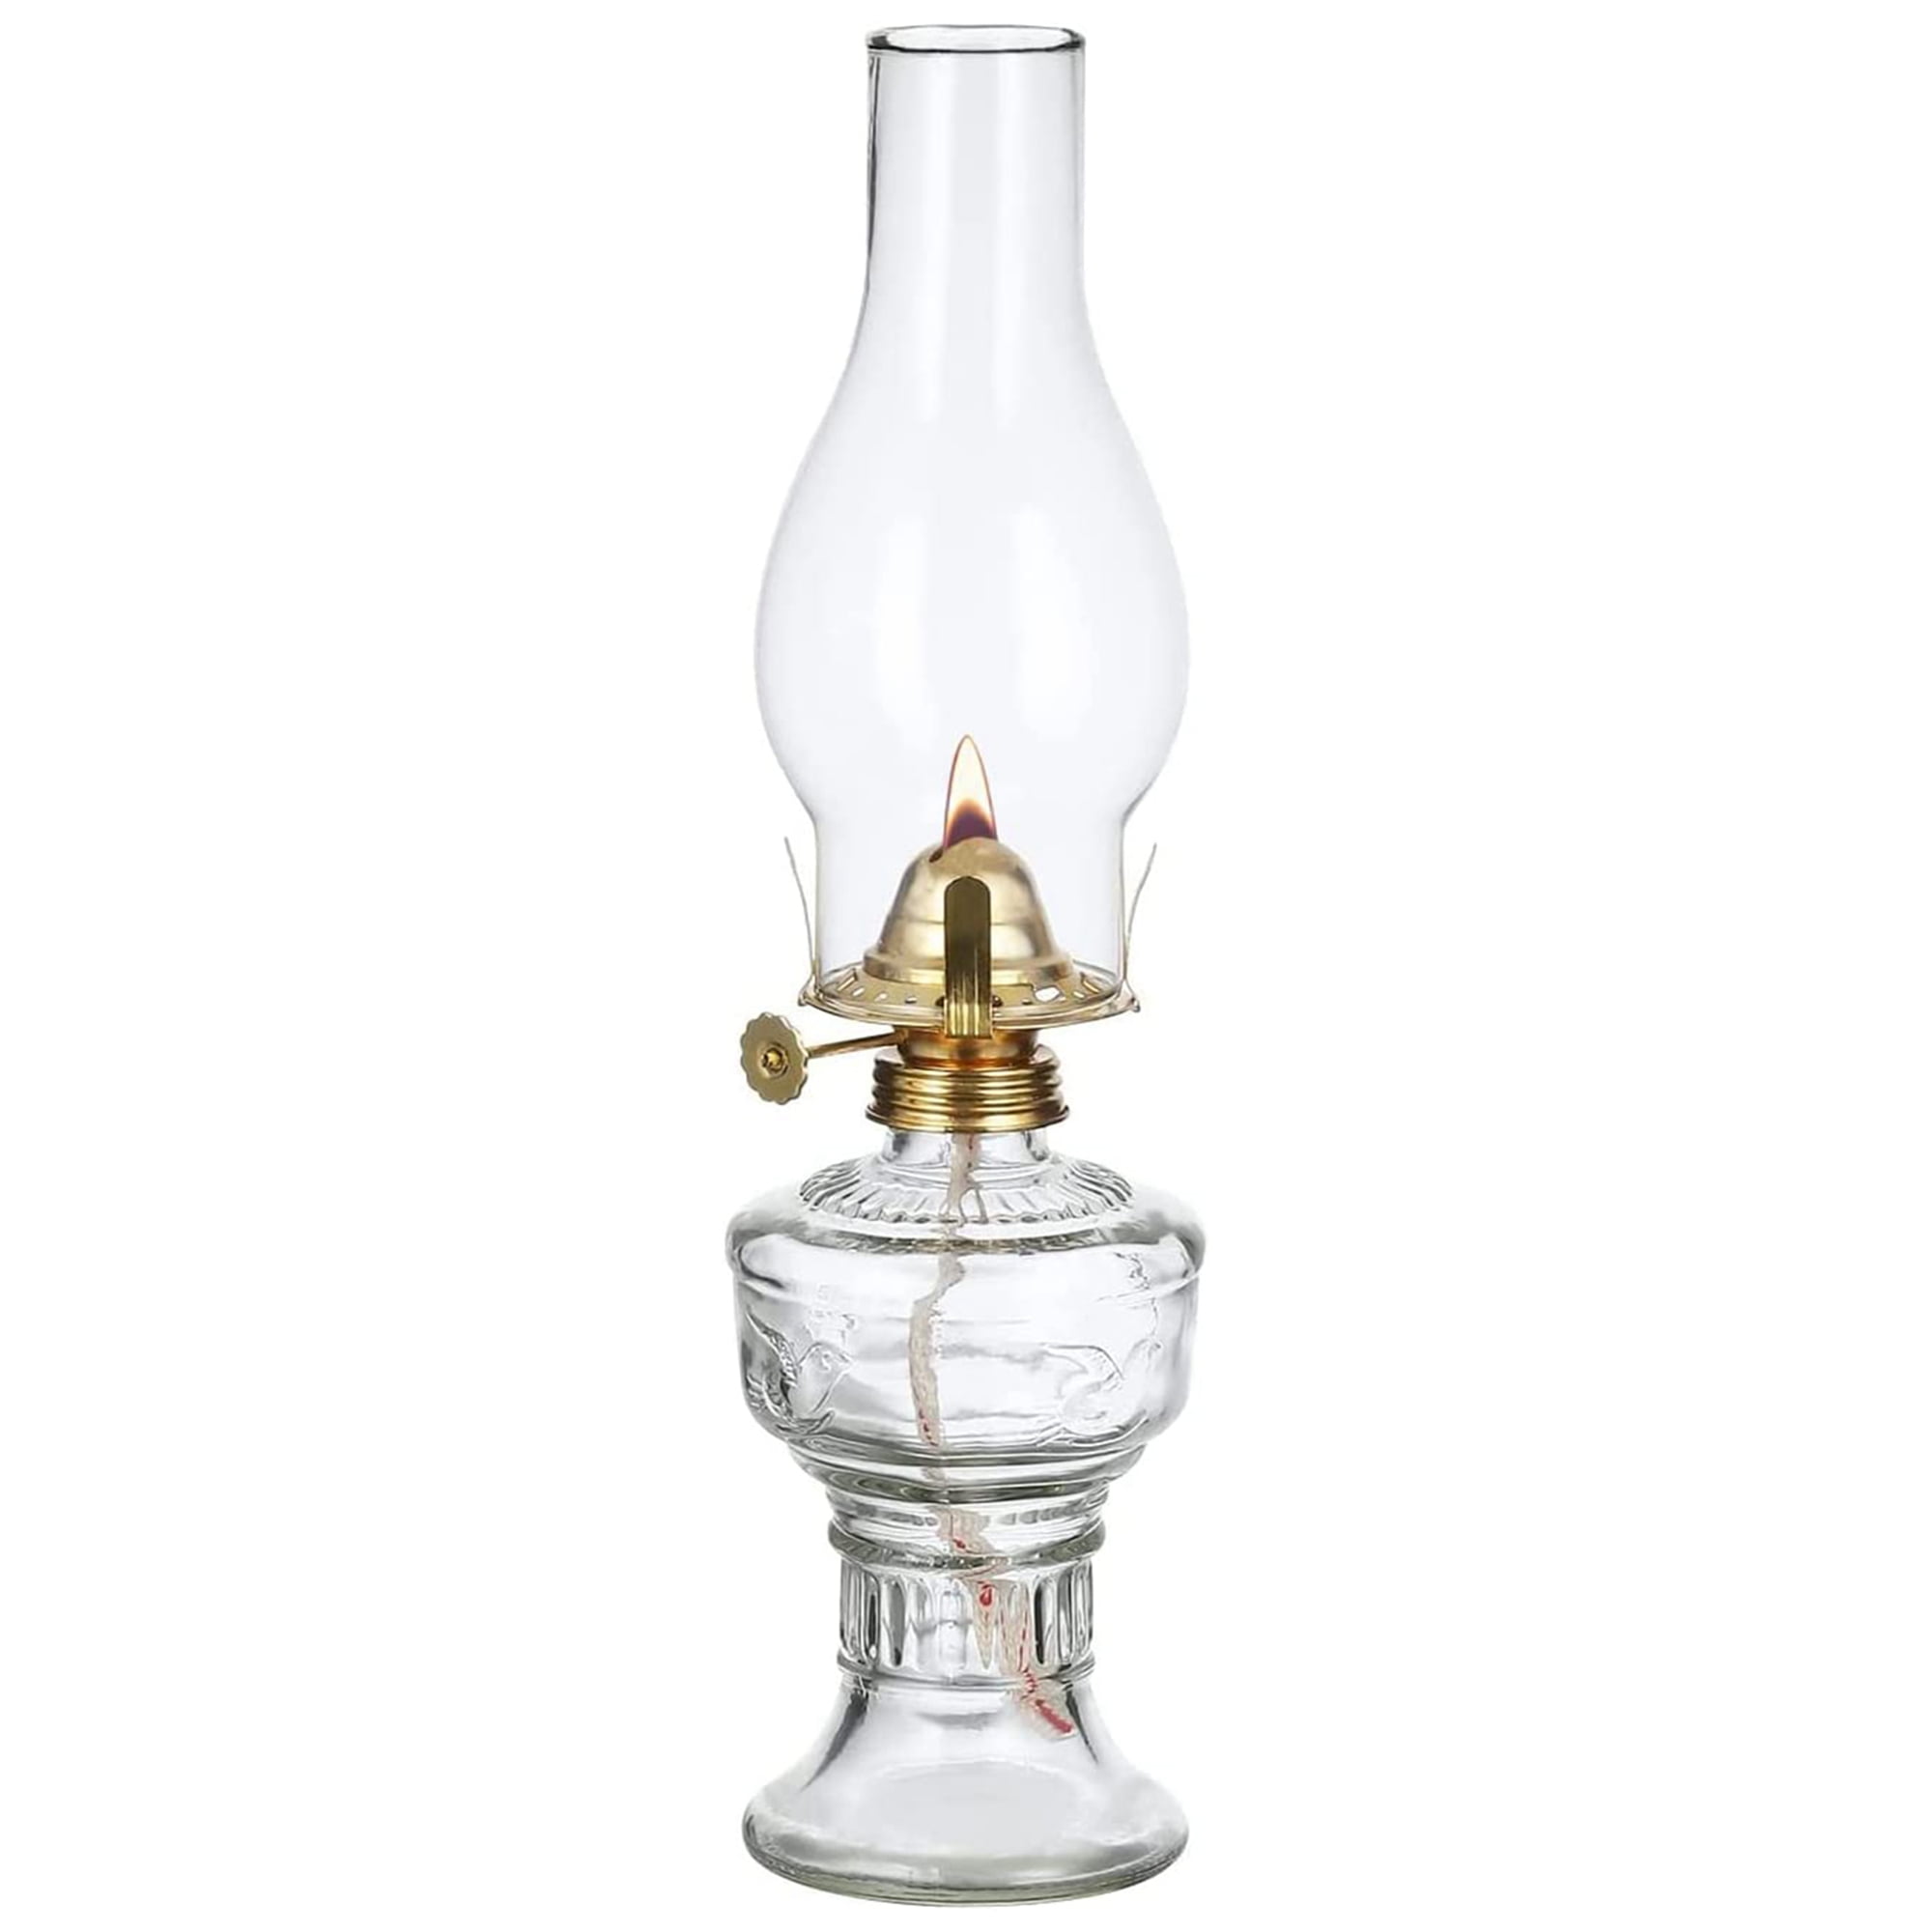 Large Glass Kerosene Oil Lamp Lantern Vintage Four-Claw Oil Lamps for  Indoor Use Decor Chamber Hurricane Lamp Home Lighting Clear Kerosene Lamp  Lanterns 